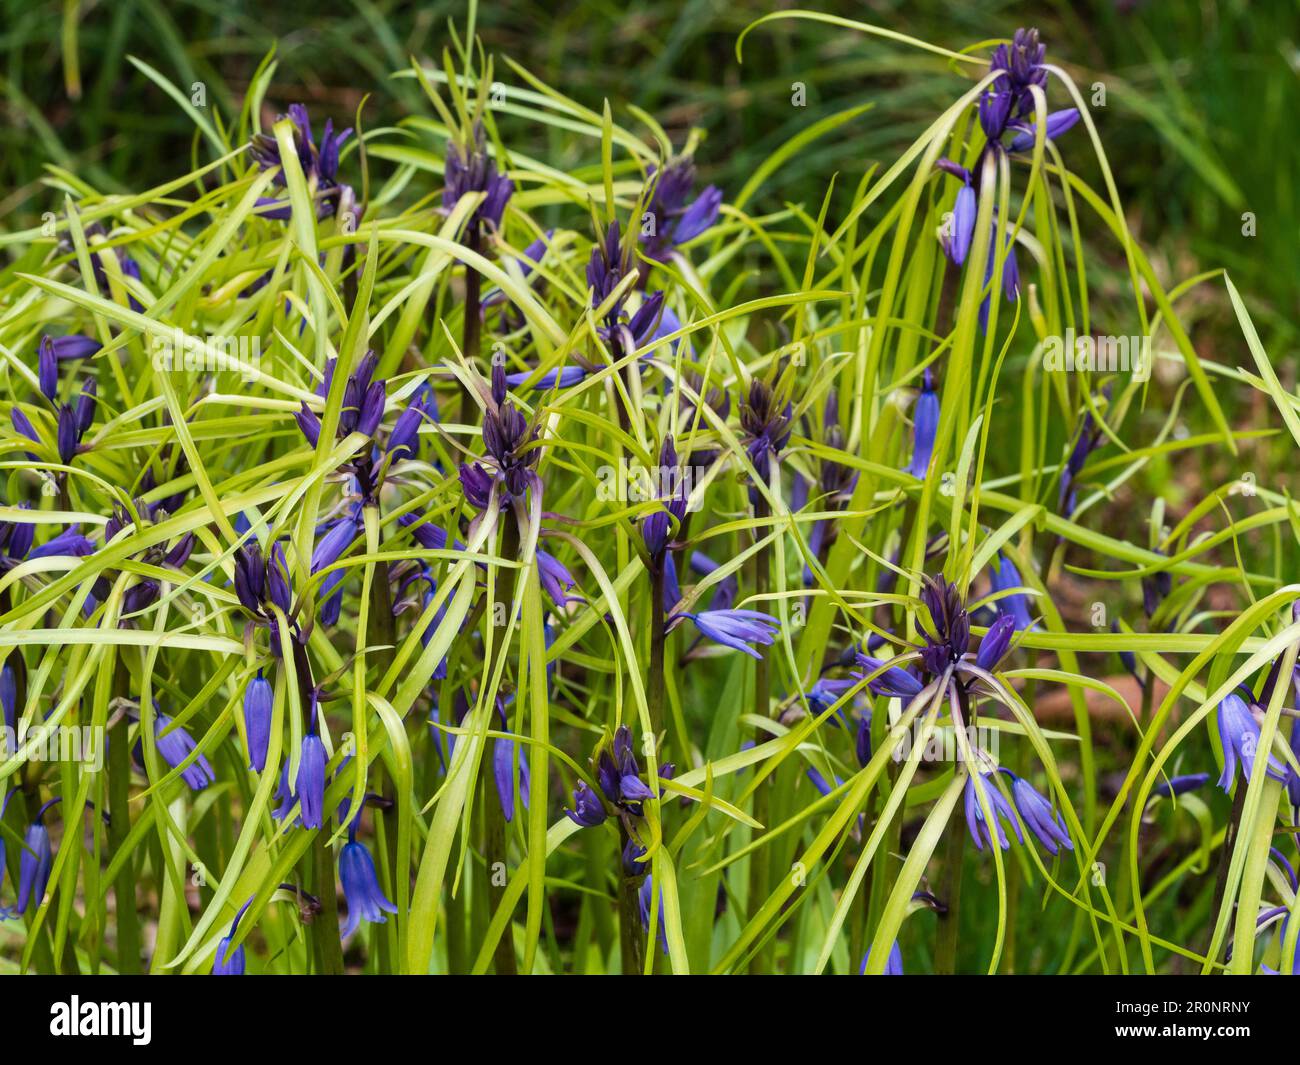 Inusual forma bracteate nativo del Reino Unido bluebell, Hyacinthoides non-scriptus, tiene hojas que crecen en el tallo floral Foto de stock